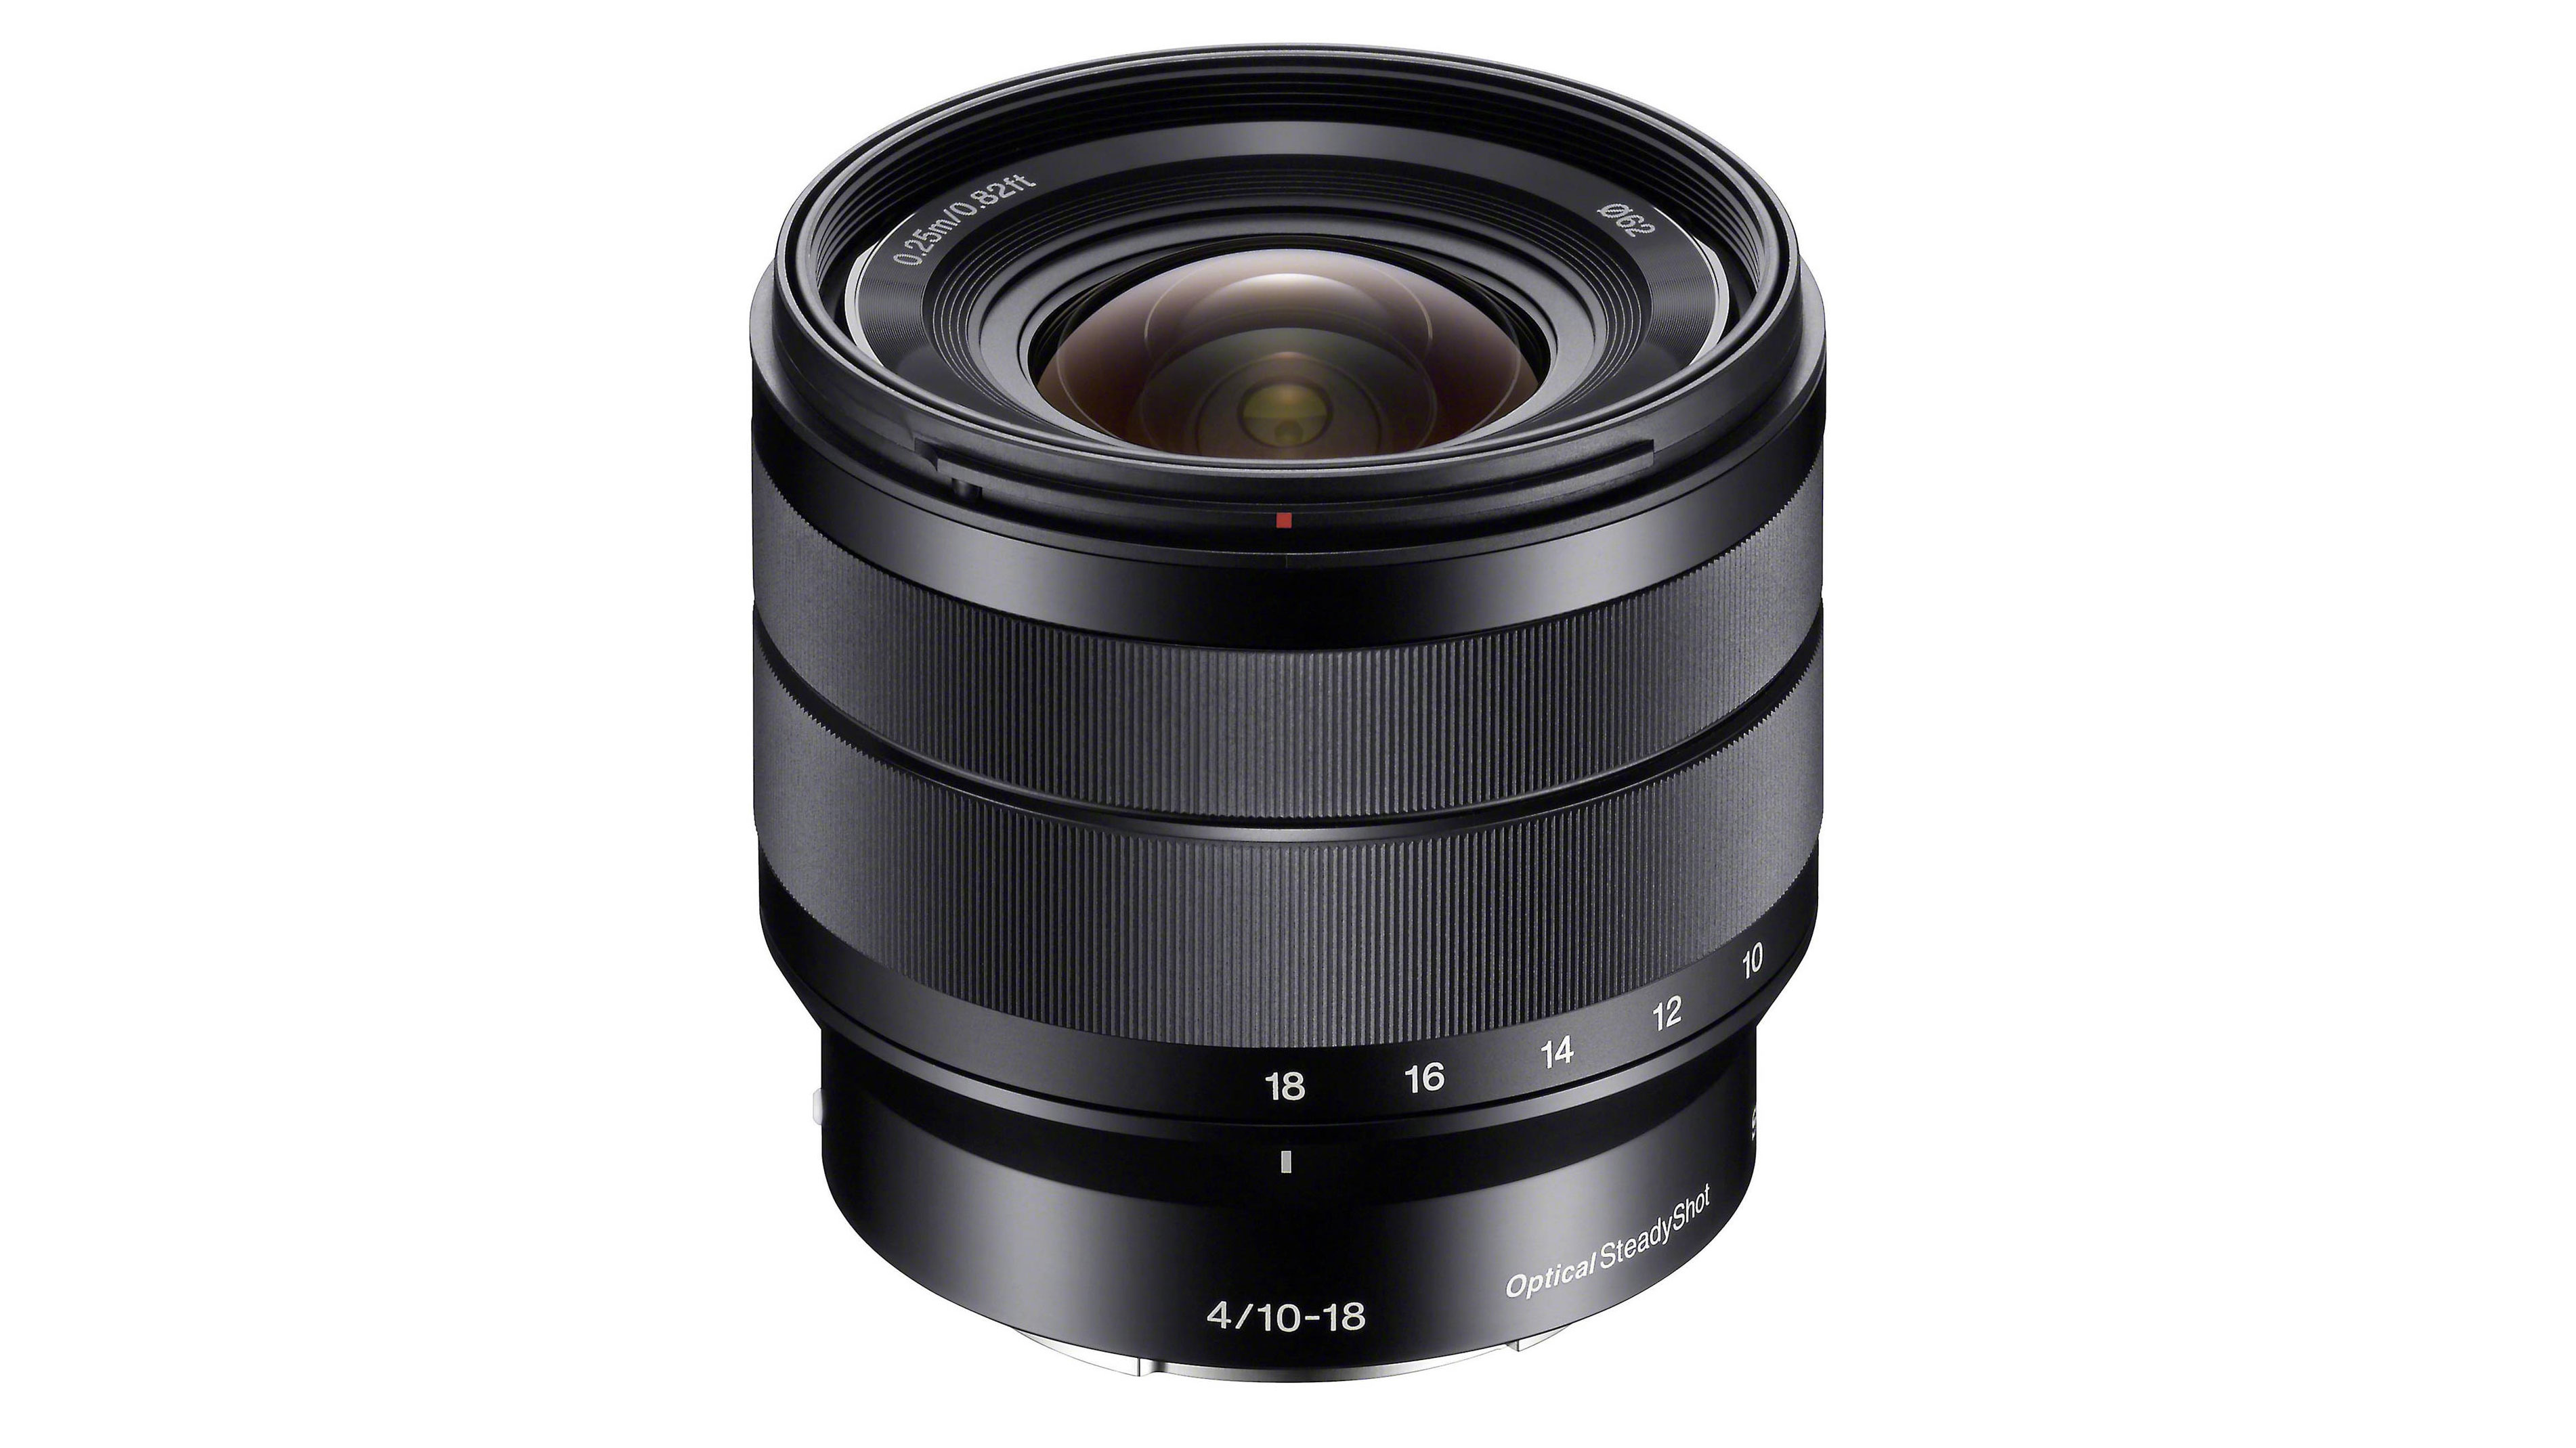 Best Sony lens: Sony E 10-18mm F4 OSS